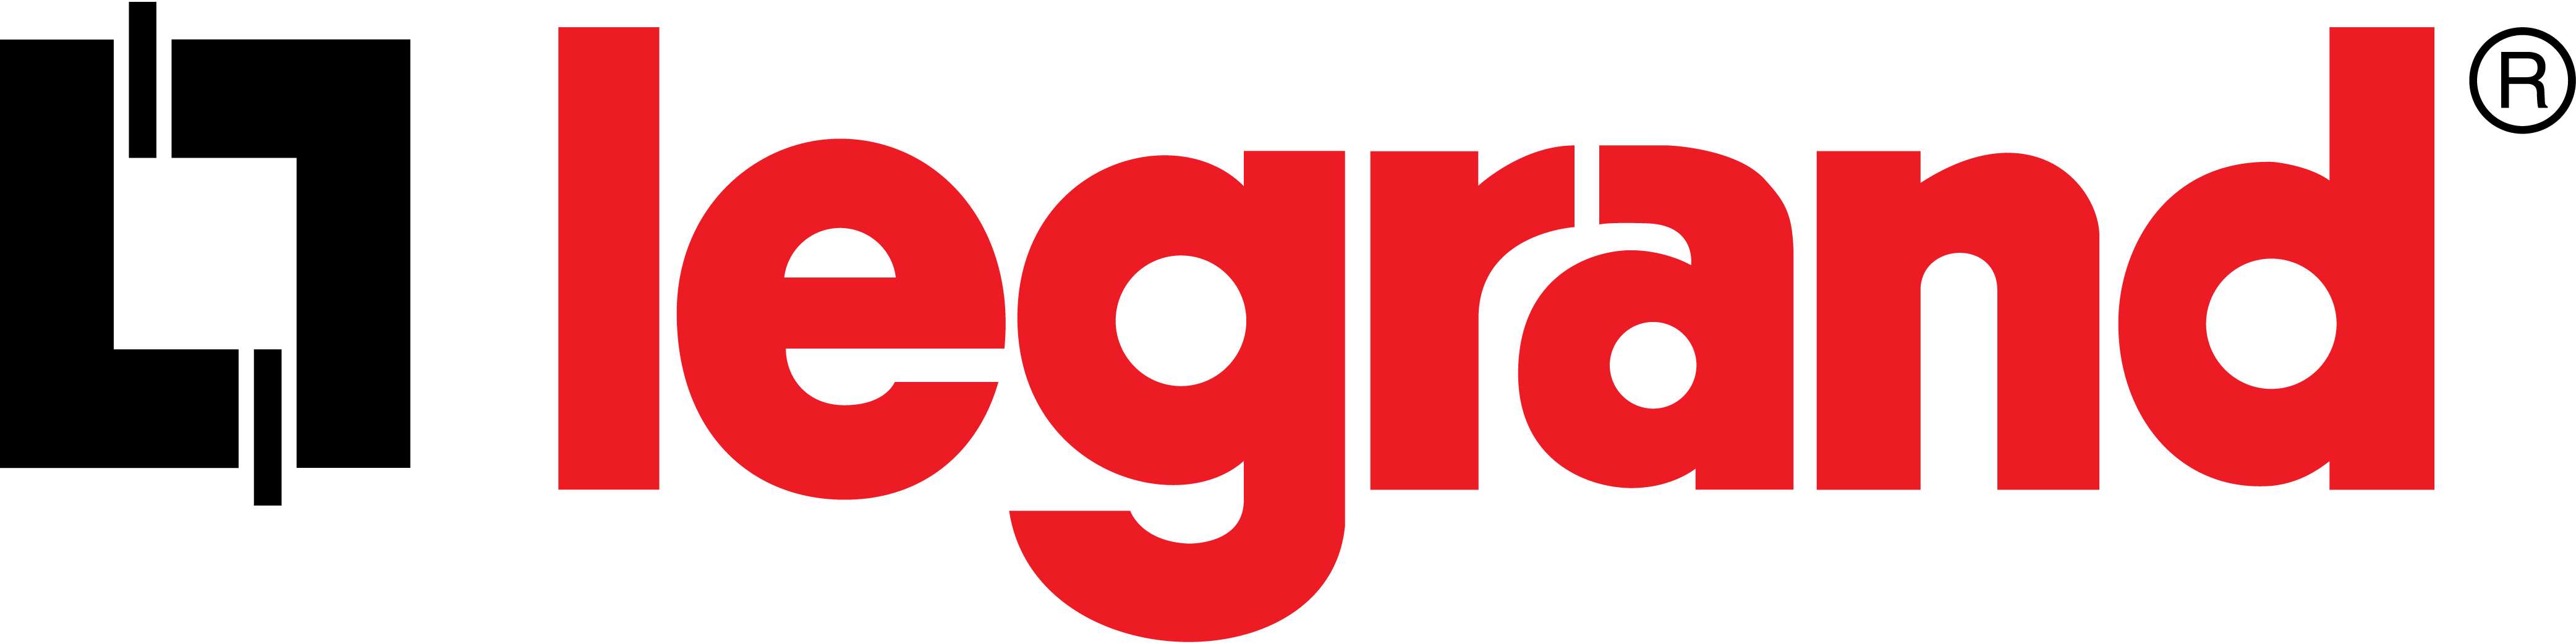 Legrand - GIB